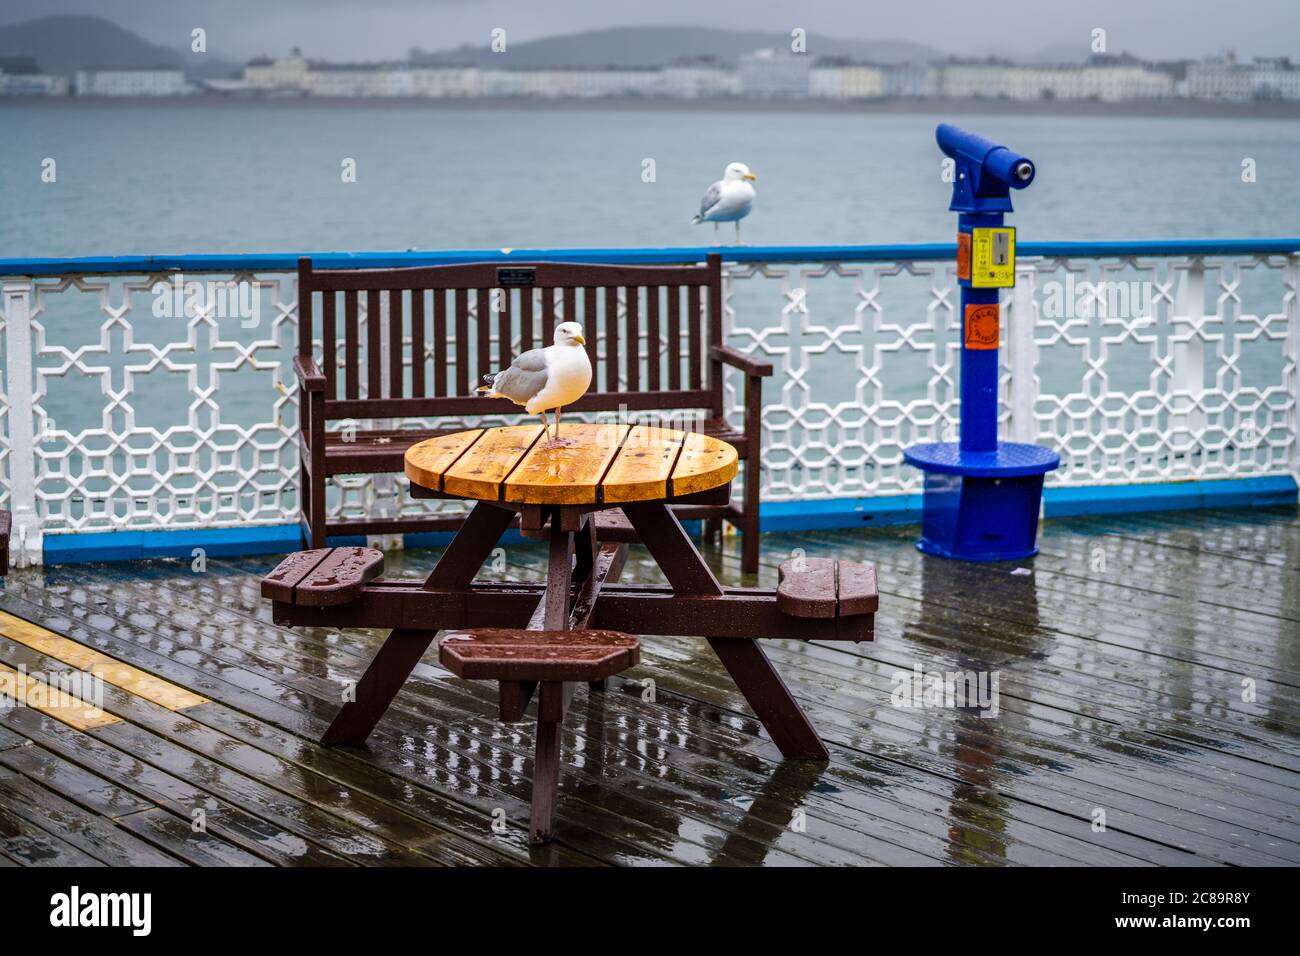 Wet Seaside Holiday - giorno piovoso a Llandudno nel Galles del Nord. Vacanza britannica bagnata. Foto Stock